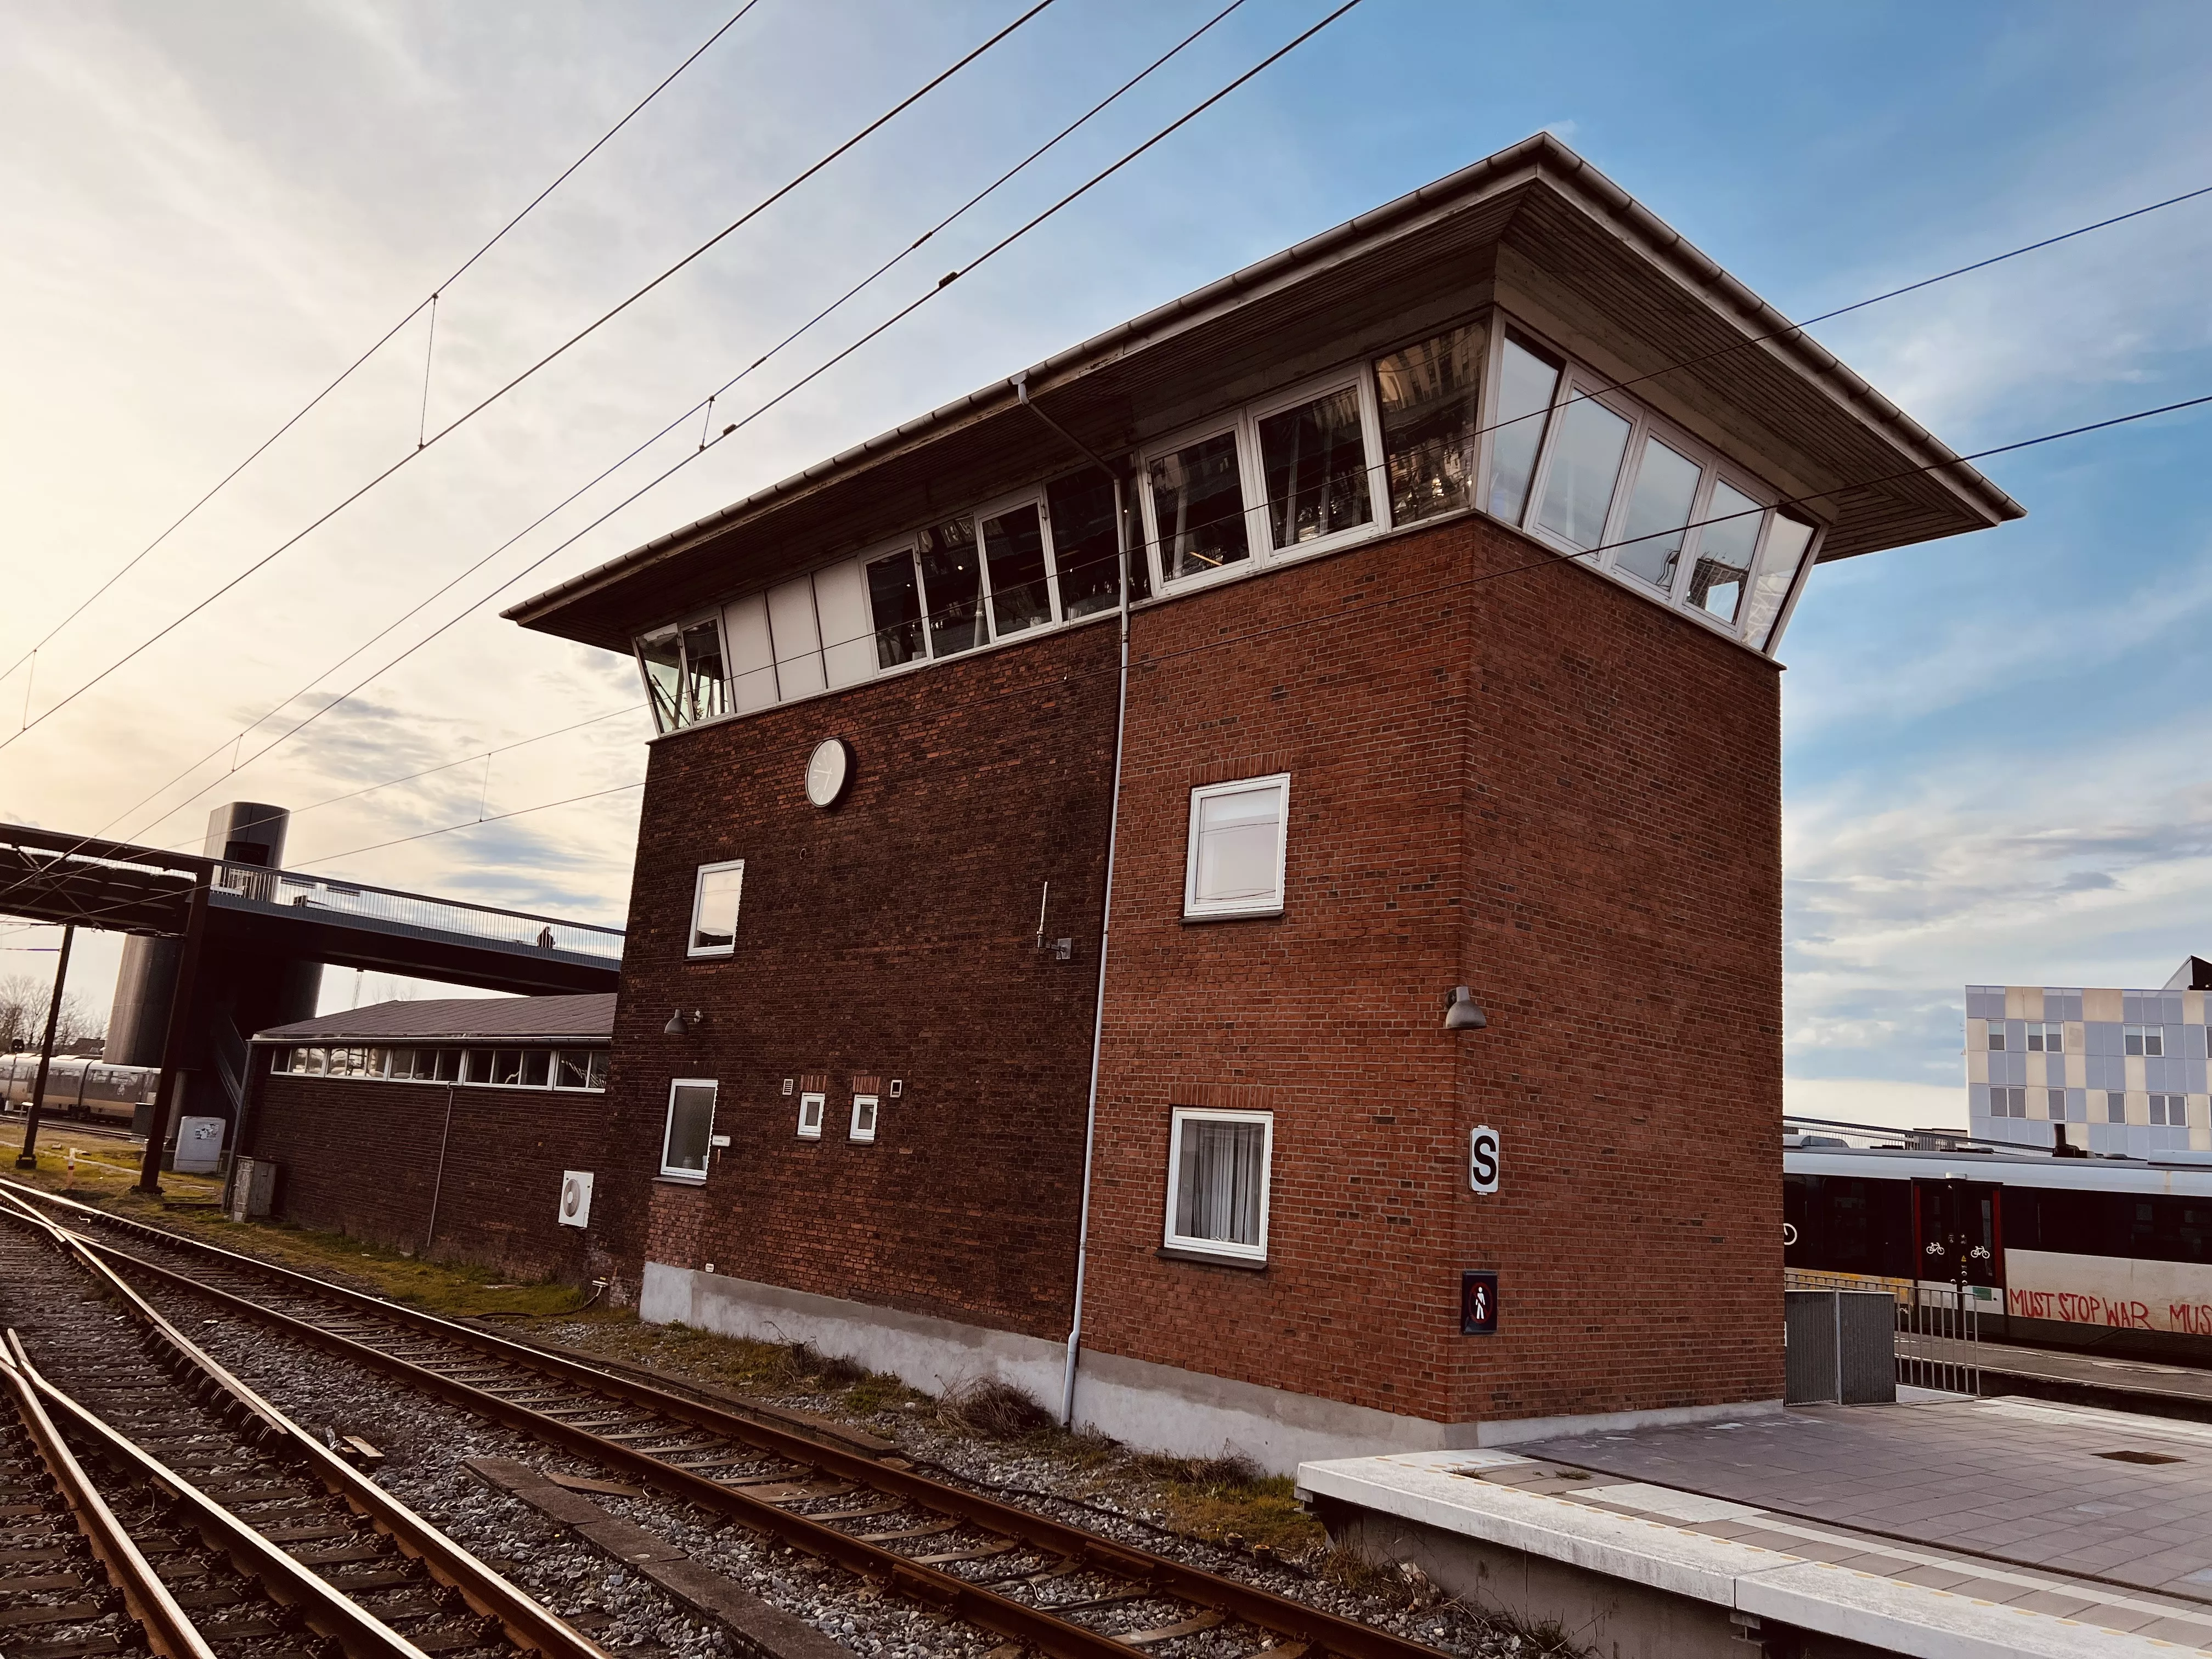 Billede af Odense OMB Station - Station er nedrevet, men Odense OMB Station har ligget her ved komandoposten.